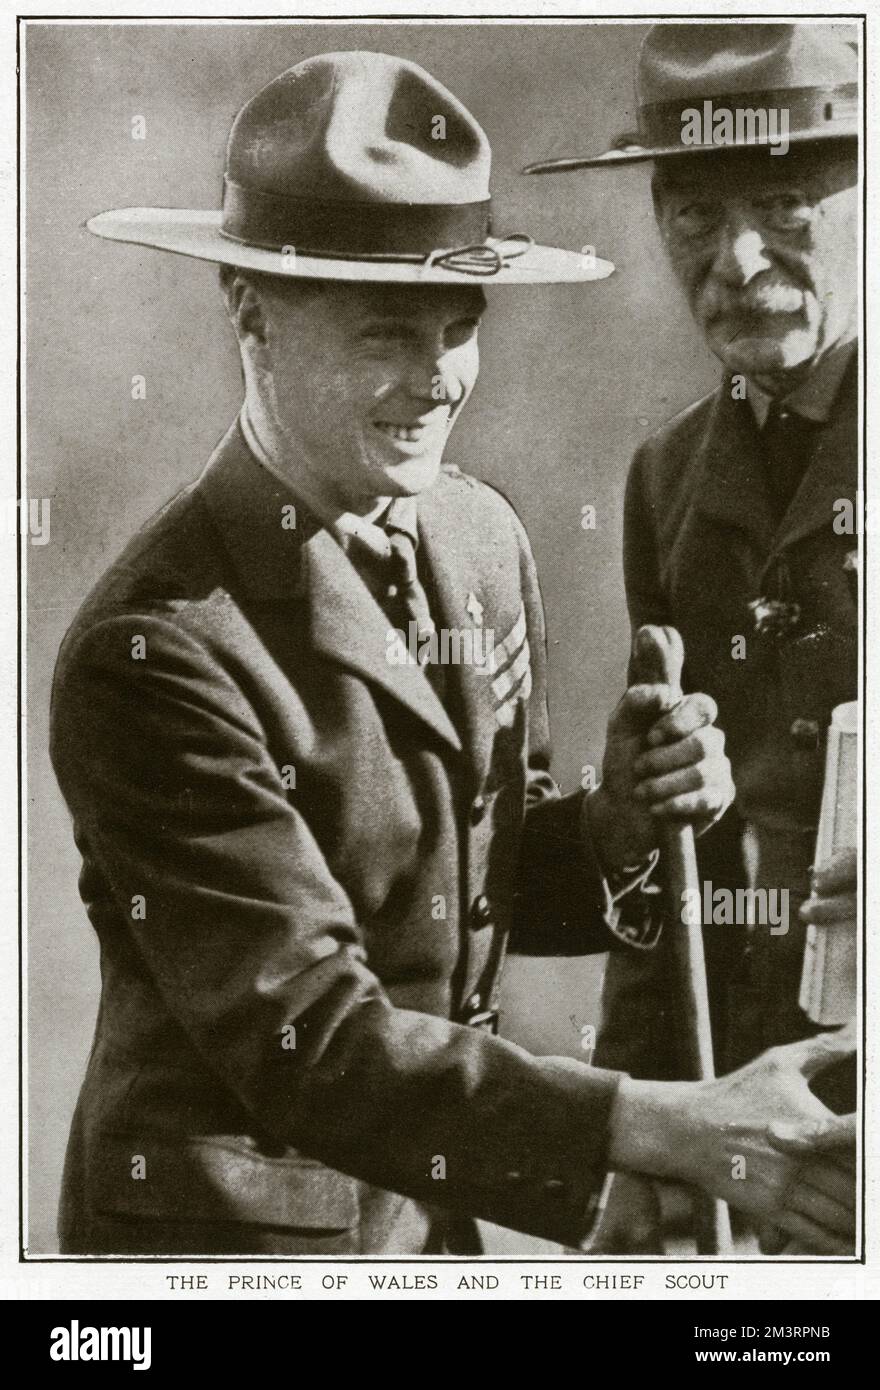 Prince de Galles, plus tard Edward VIII, jusqu'à l'abdication même année 1936 et connu comme duc de Windsor (1894 - 1972), photographié avec Sir Robert Baden-Powell (1857 - 1941), fondateur des scouts et des Guides. 1922 Banque D'Images